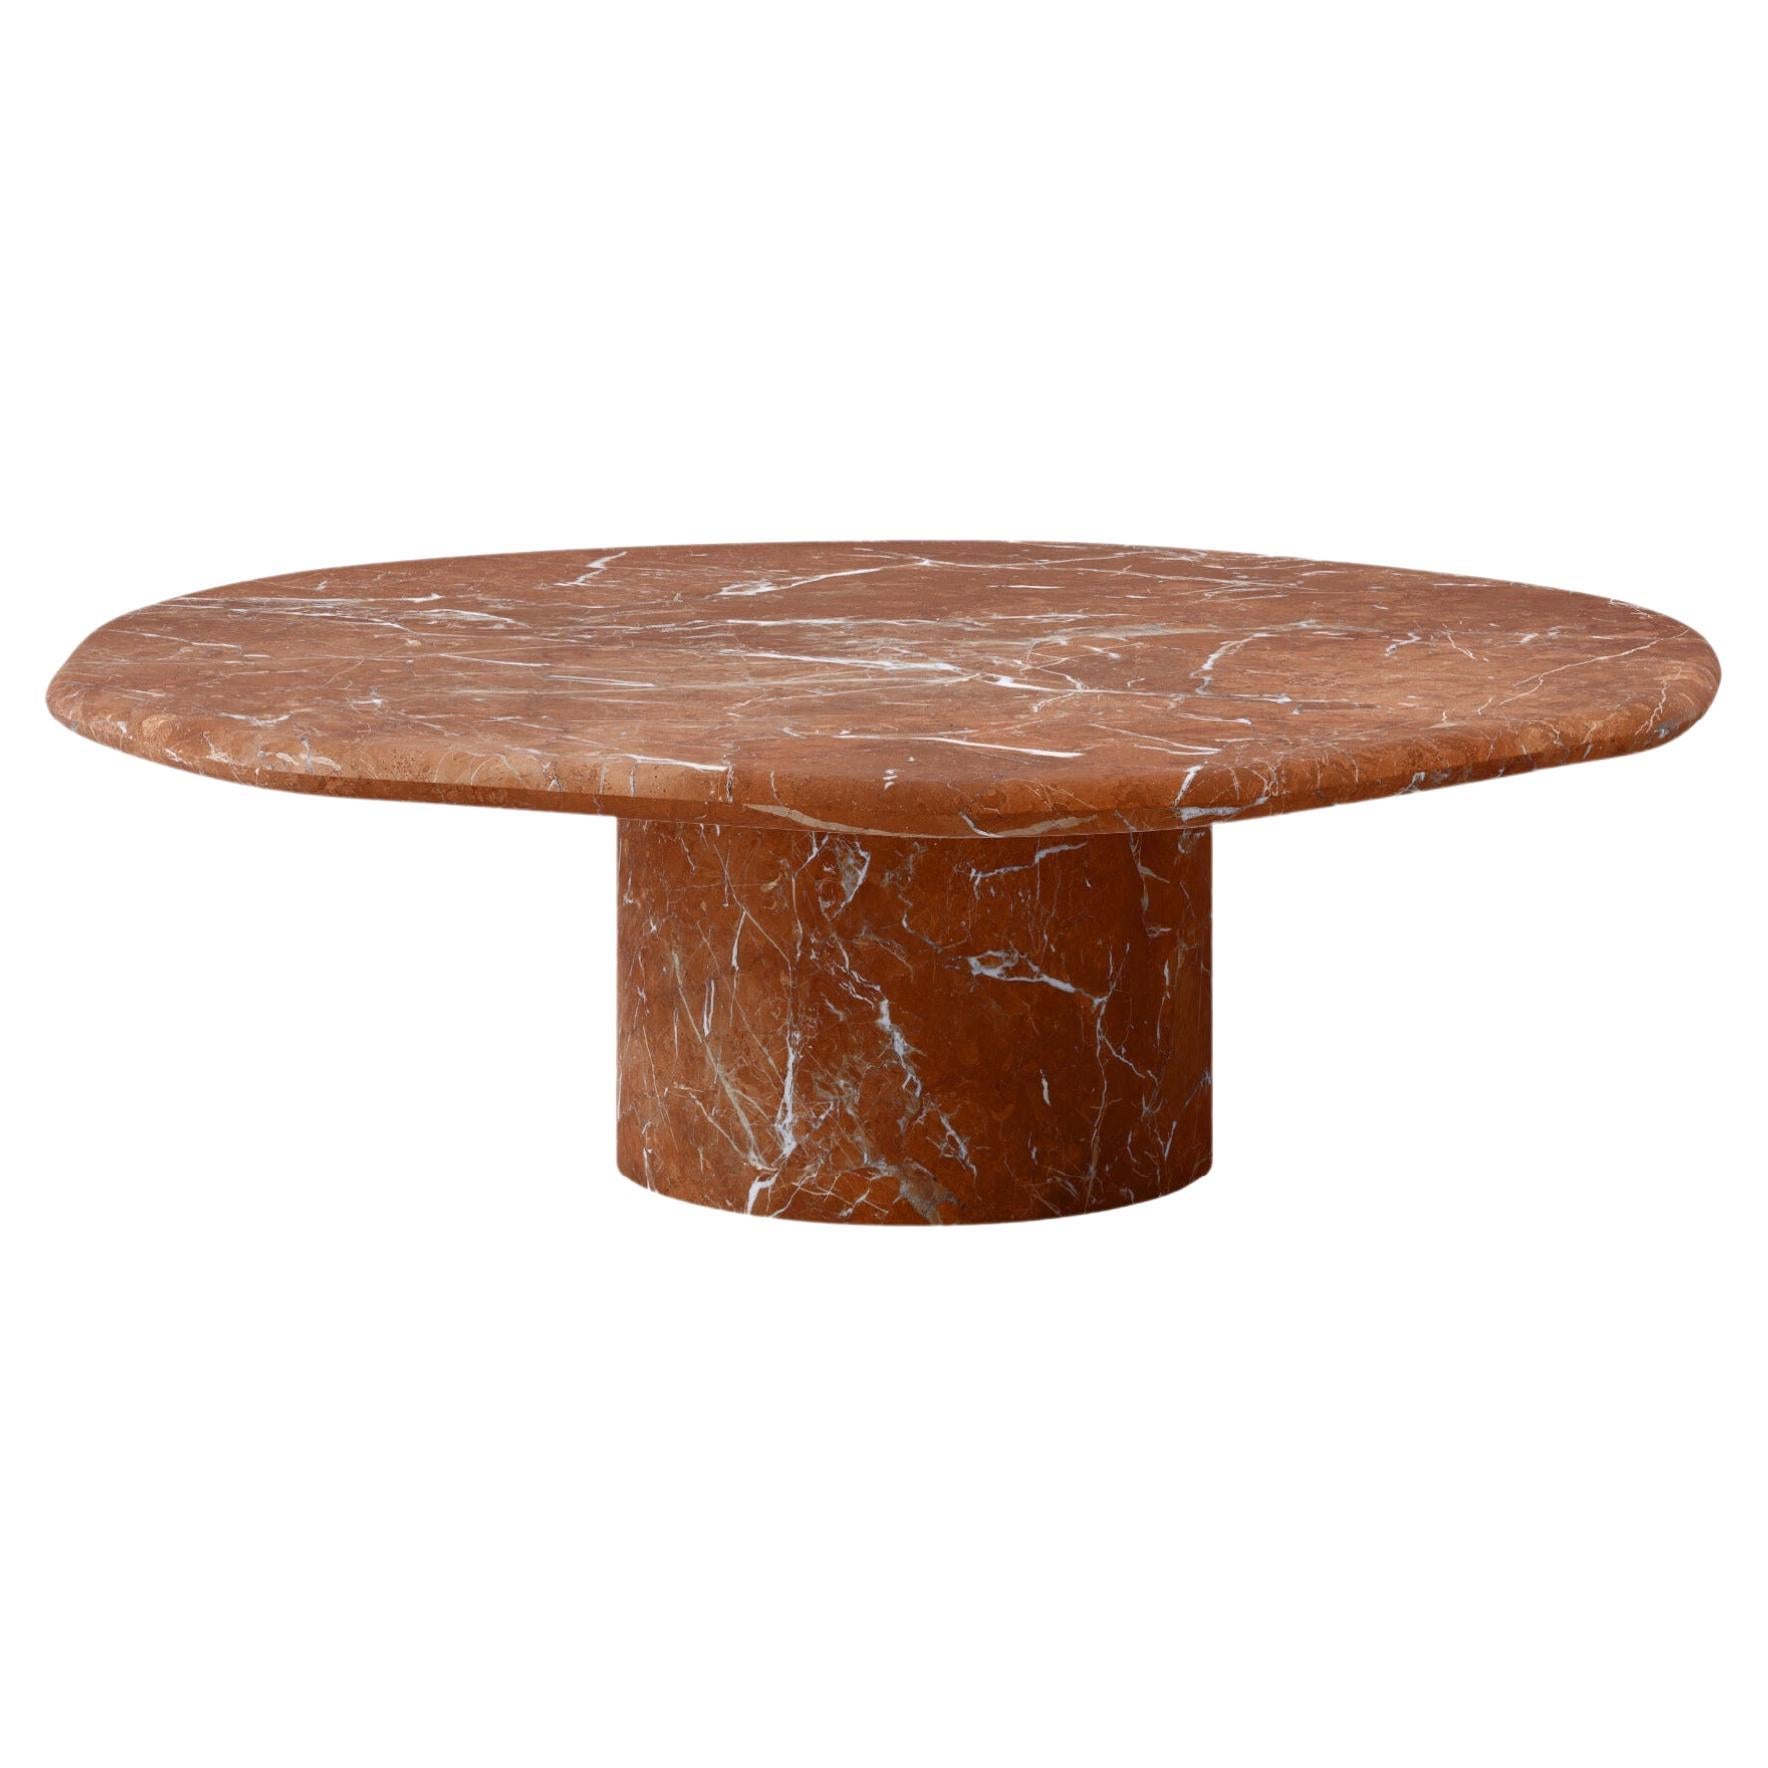 FORM(LA) table basse ronde Lago 54L x 54W x 14H marbre Rojo Alicante en vente